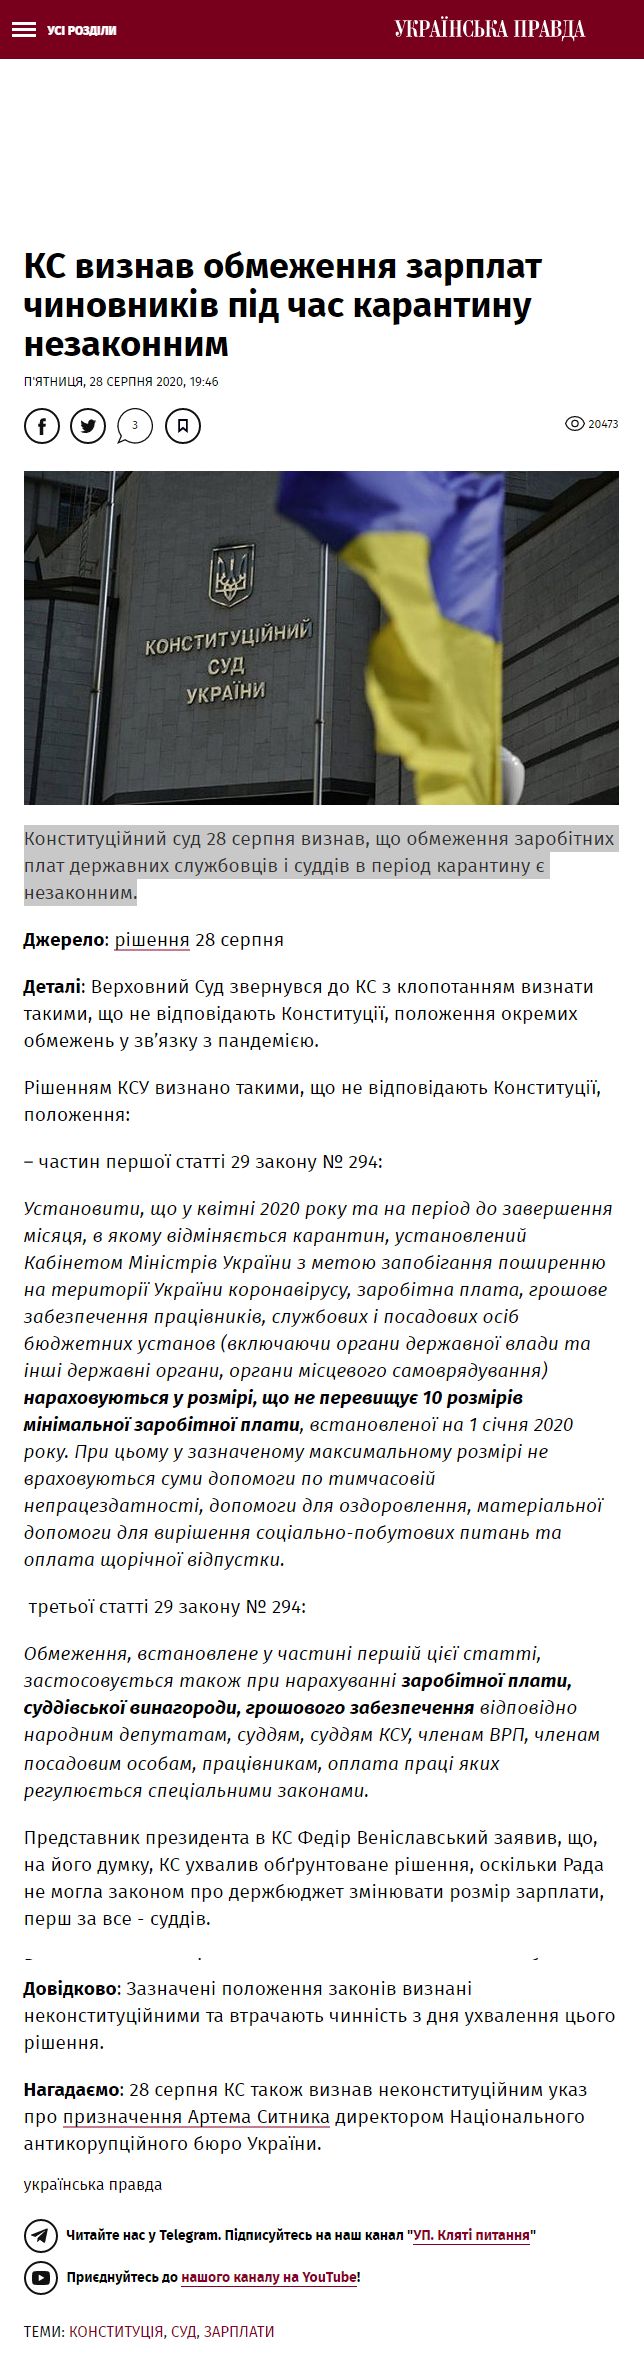 https://www.pravda.com.ua/news/2020/08/28/7264542/